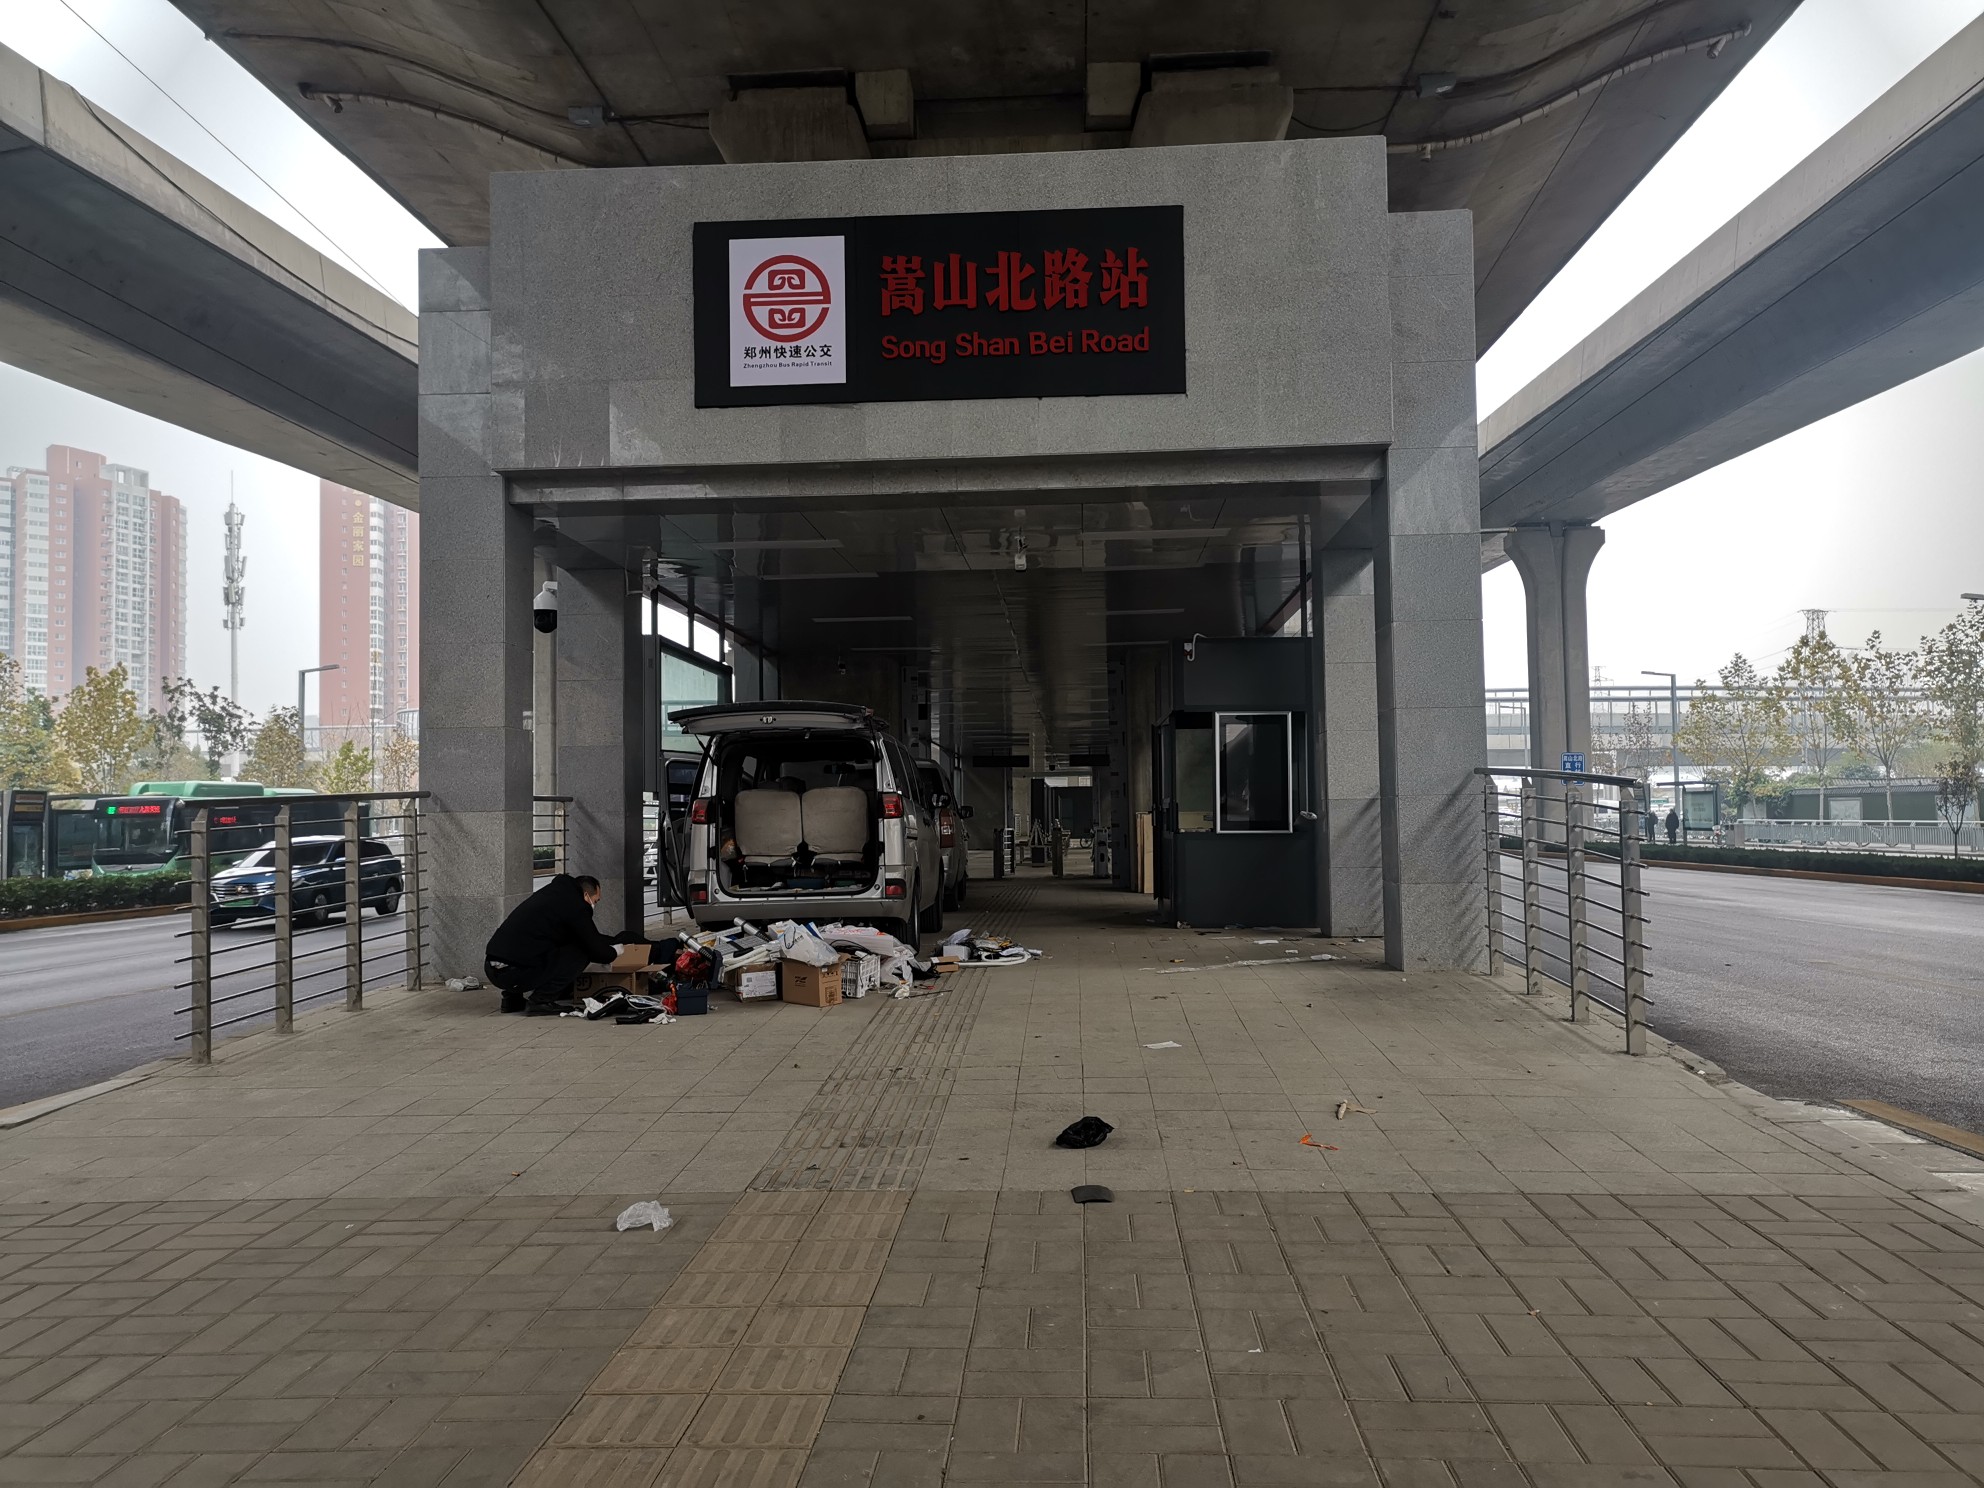 后续丨郑州这俩 BRT站台,到底啥时候能建好?